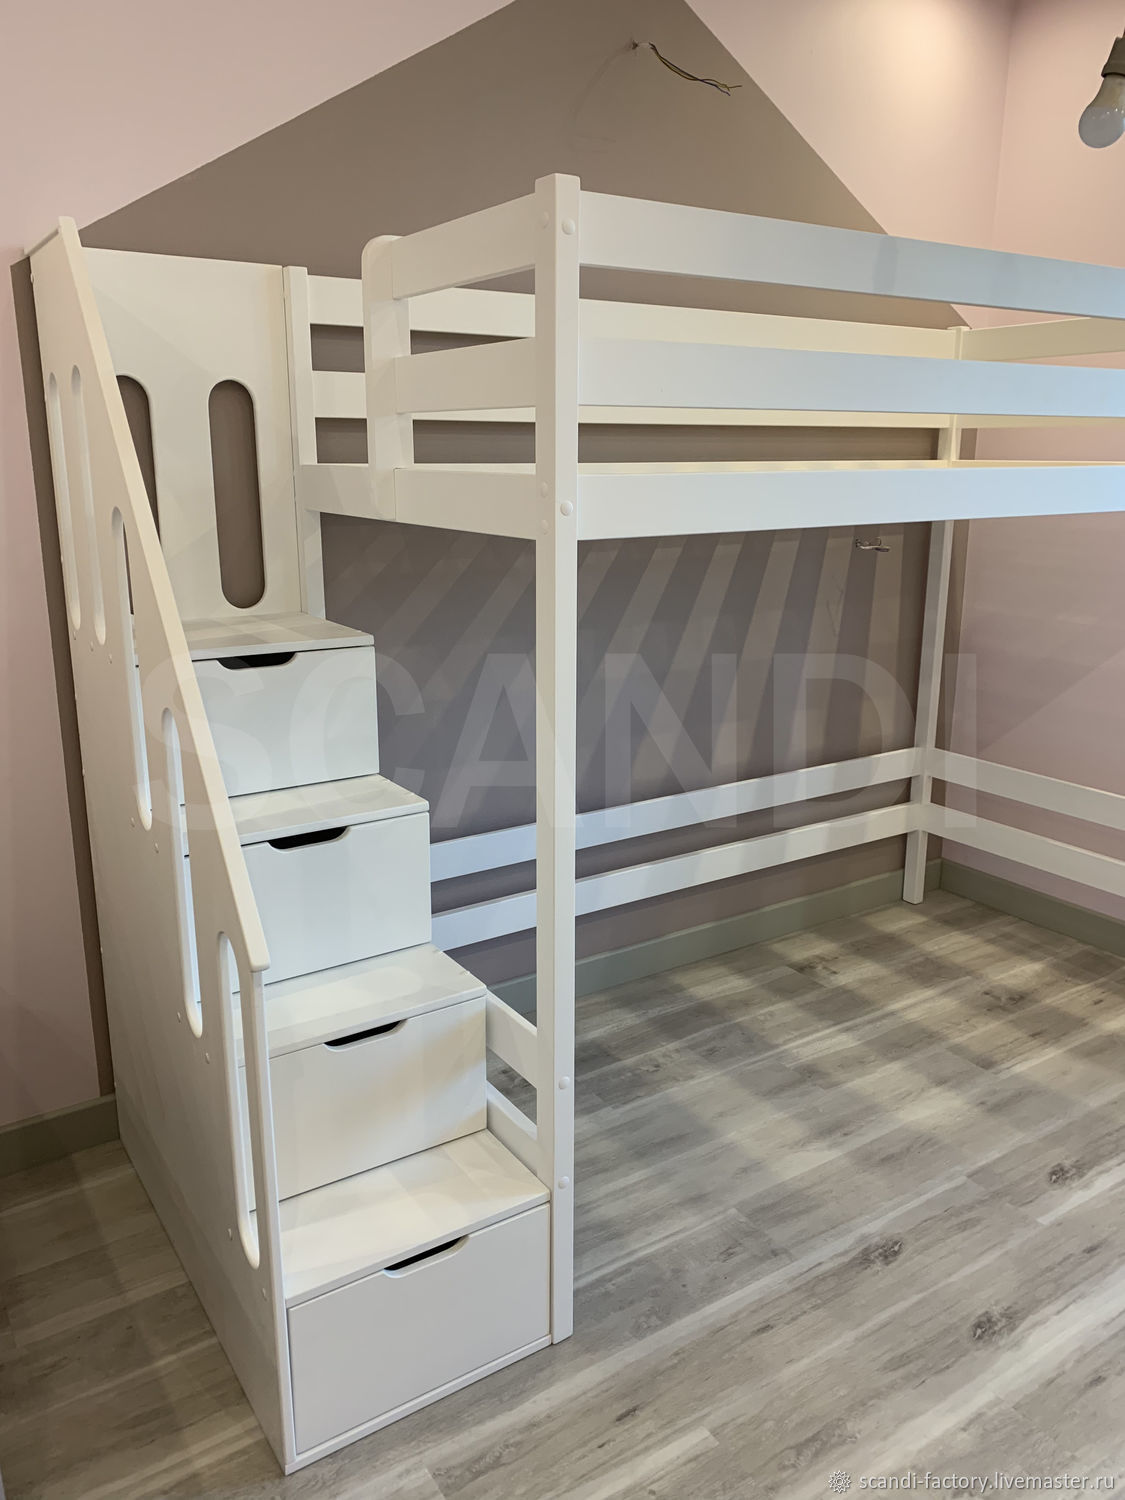 Кровать чердак с лестницей из ящиков